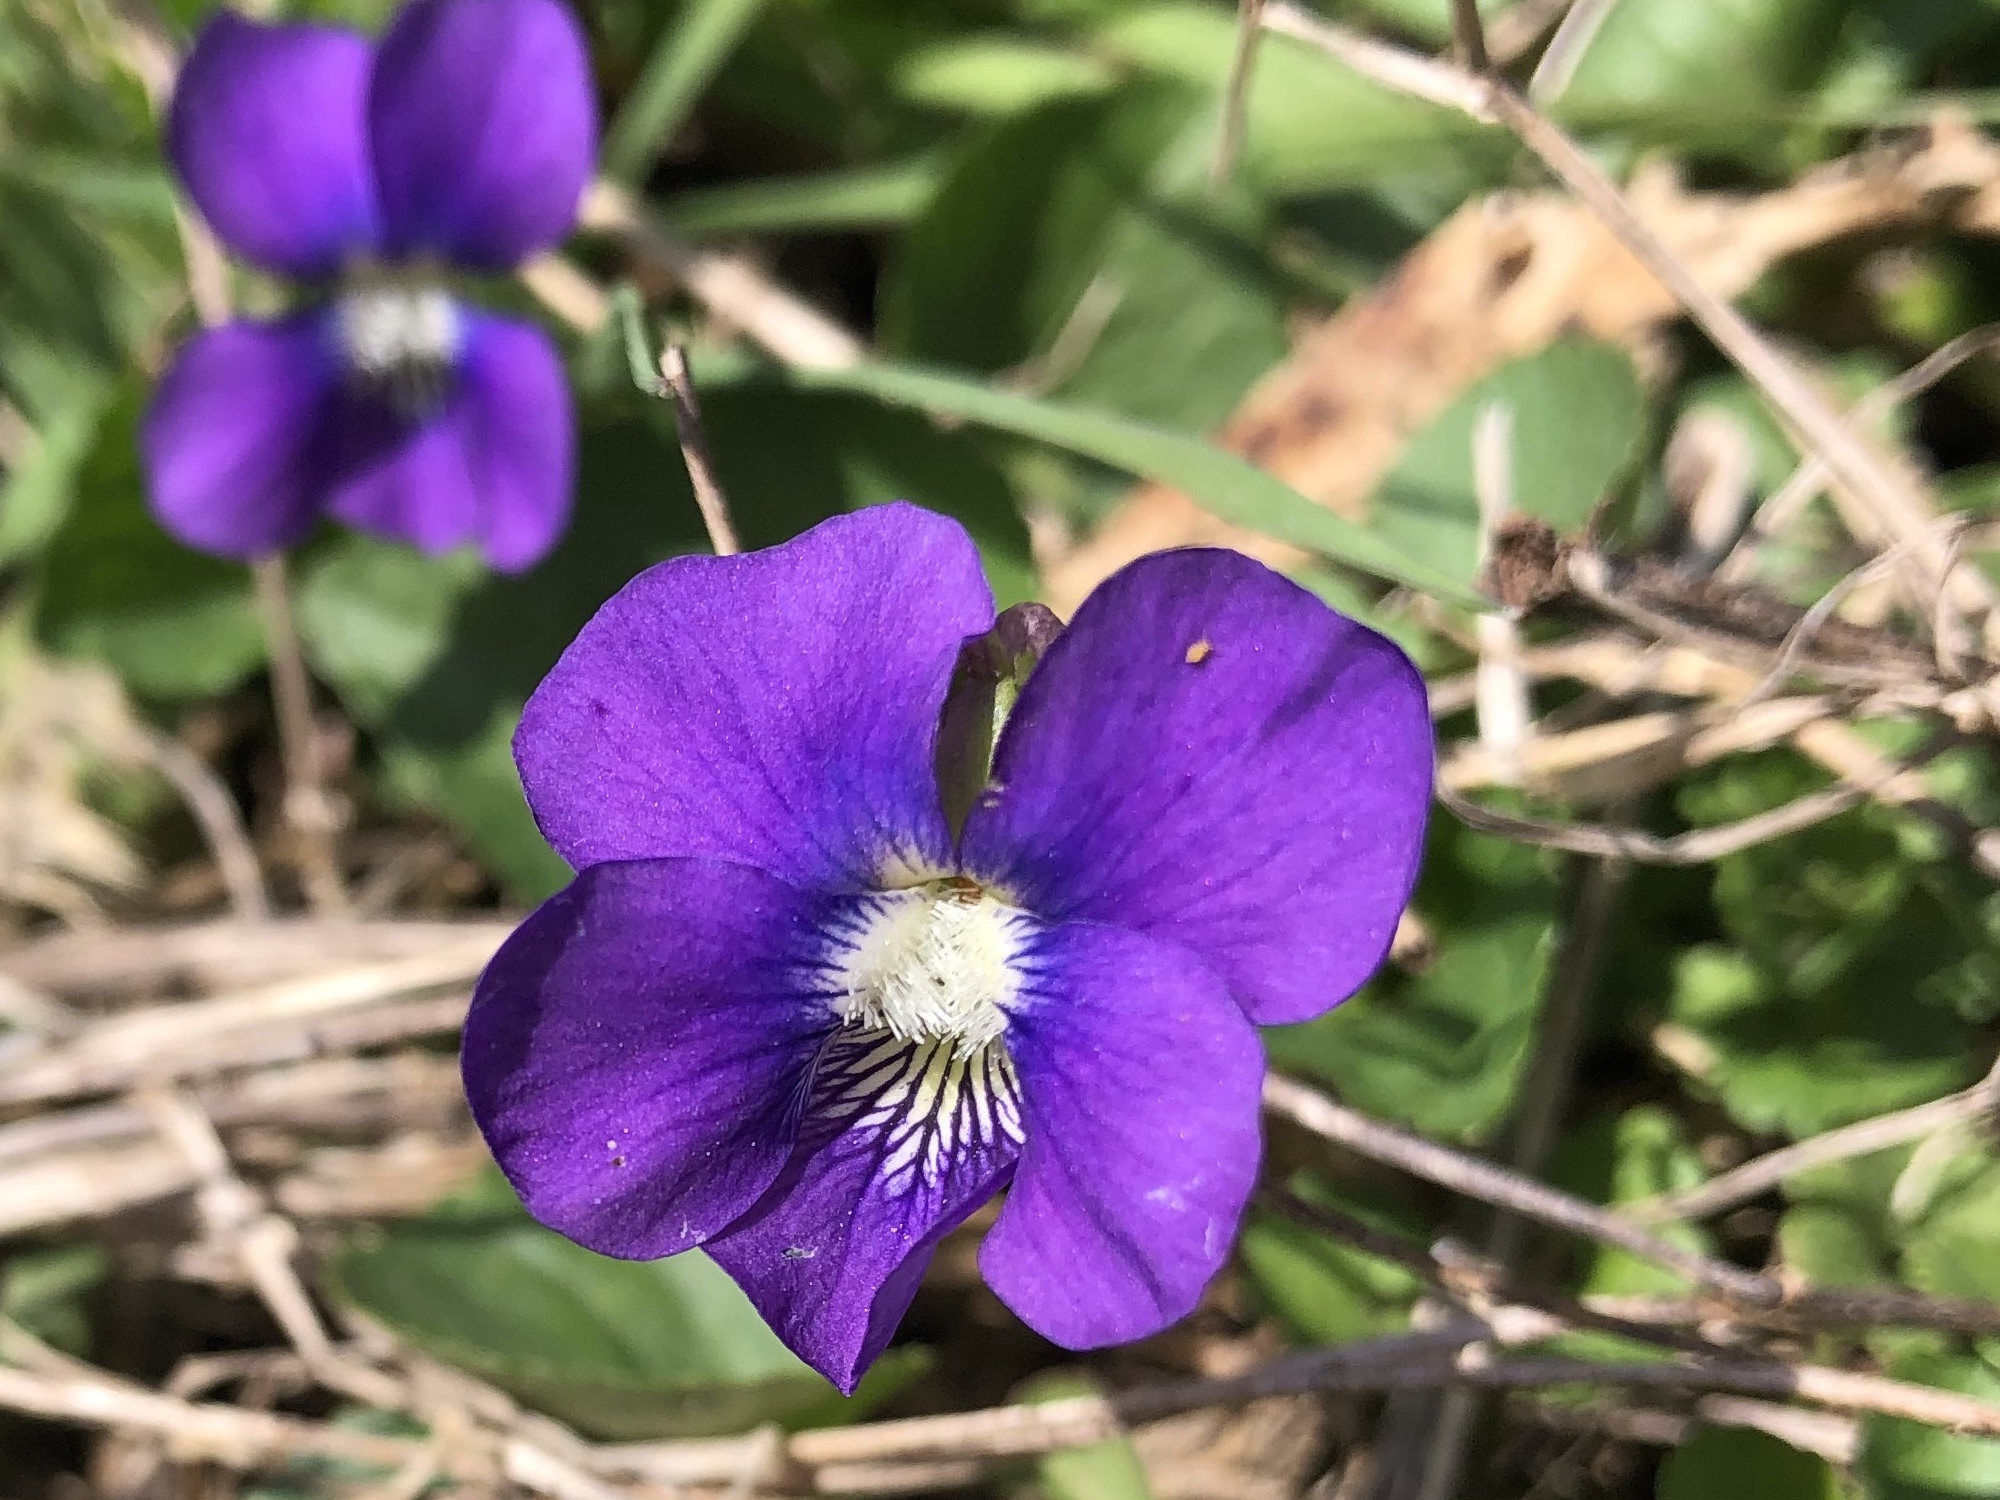 Violet in UW Arborteum Native Garden in Madison, Wisconsin on April 17, 2021.